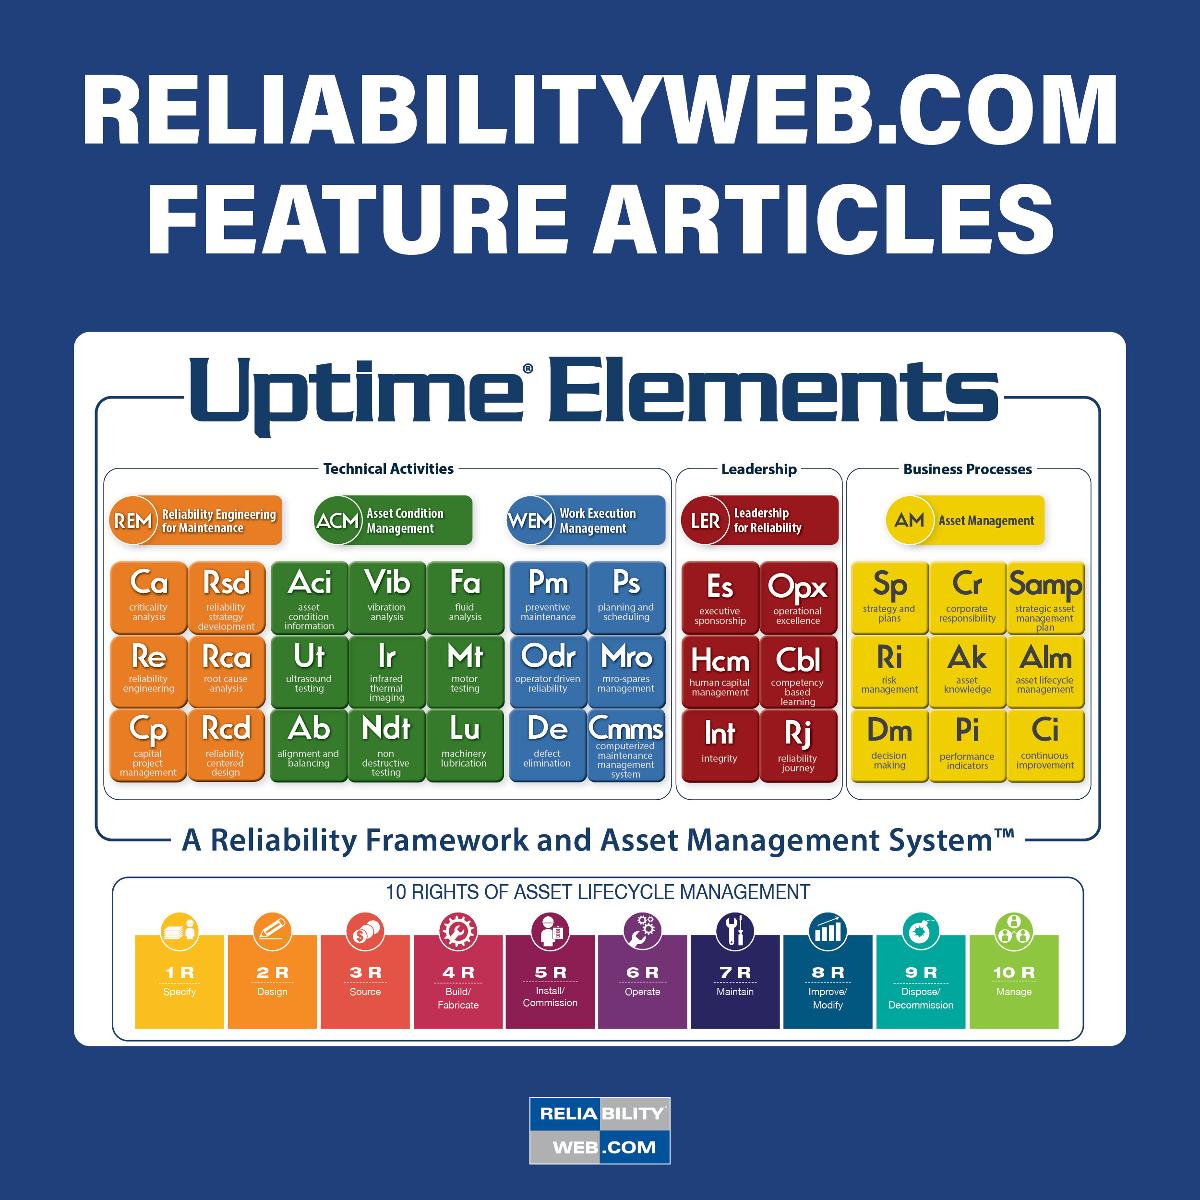 Reliabilityweb